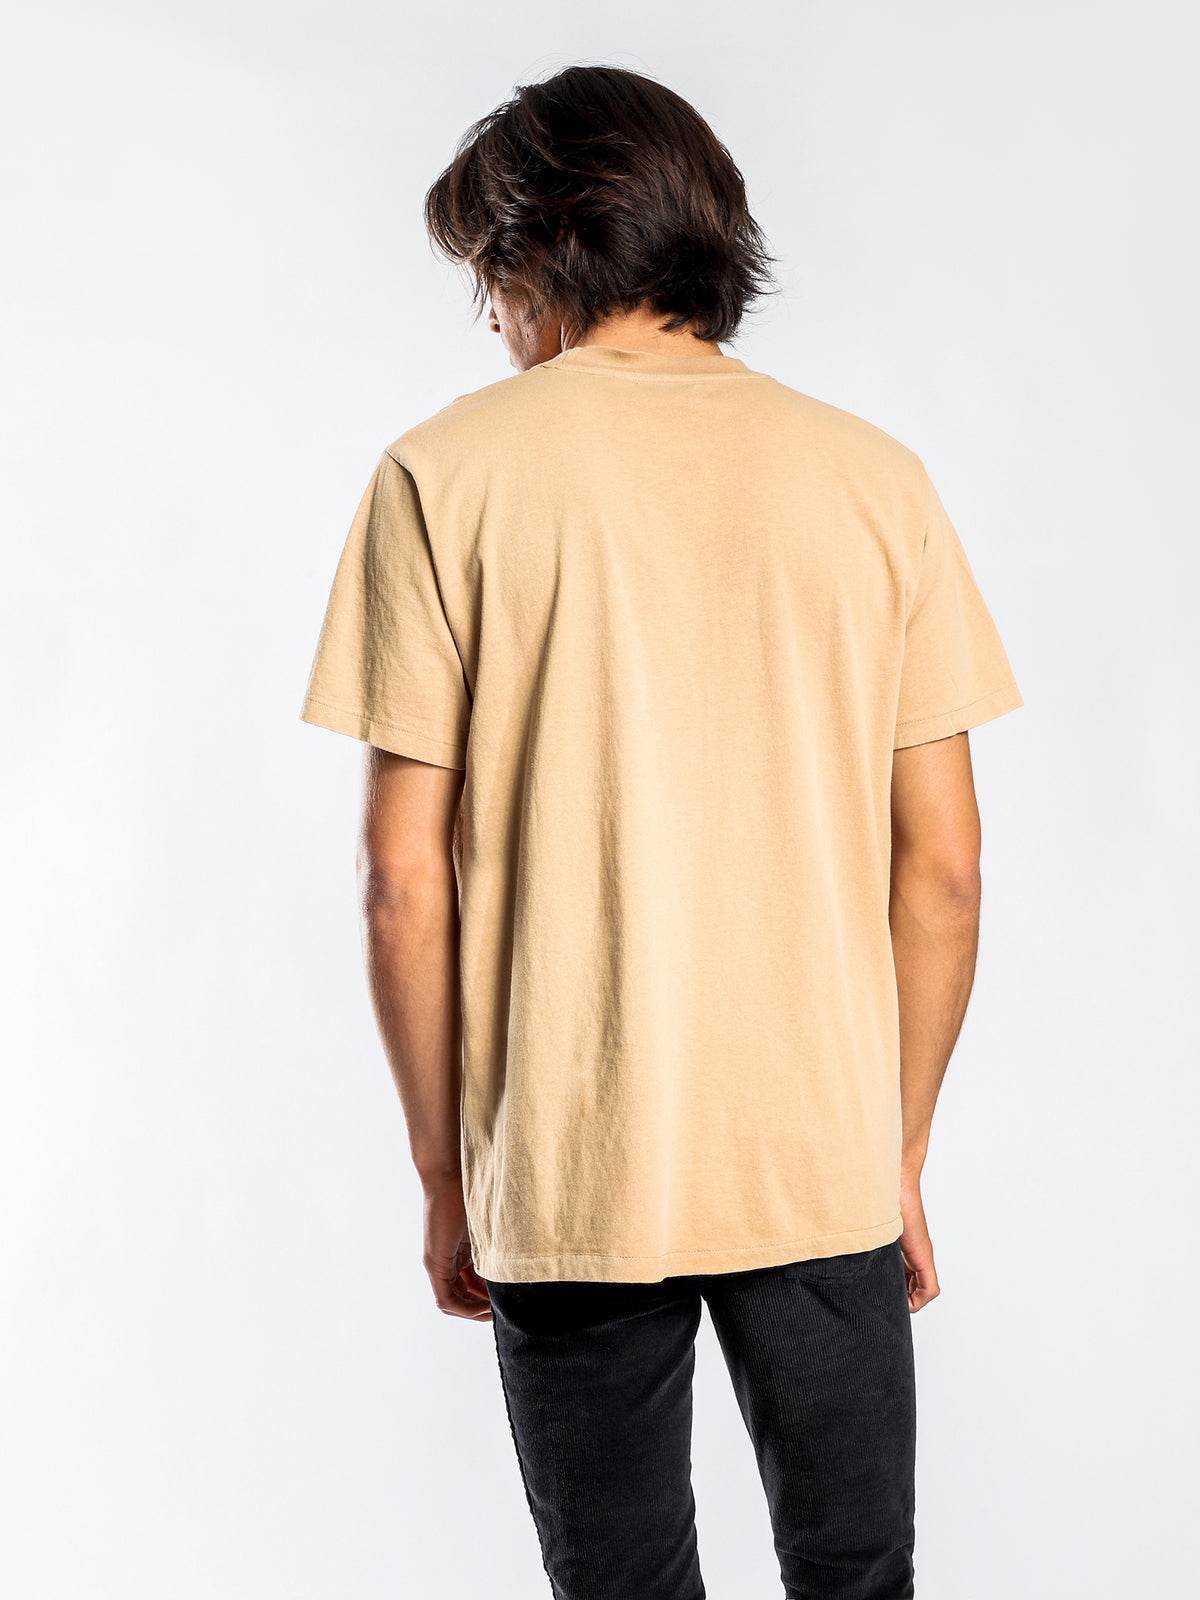 Reverse Merch Short Sleeve T-Shirt in Tan